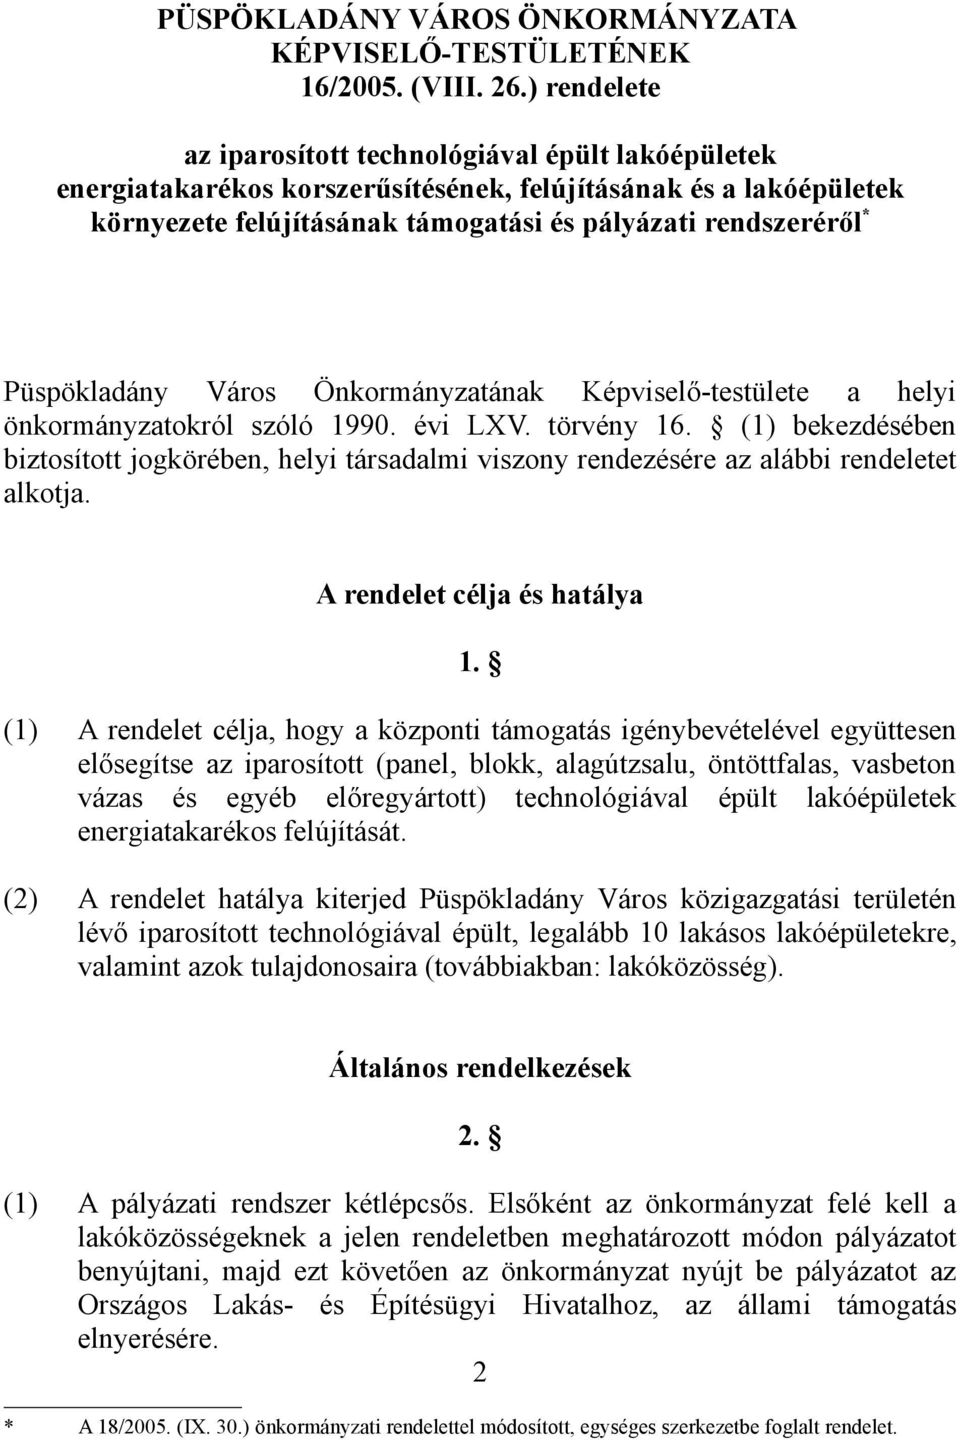 Püspökladány Város Önkormányzatának Képviselő-testülete a helyi önkormányzatokról szóló 1990. évi LXV. törvény 16.